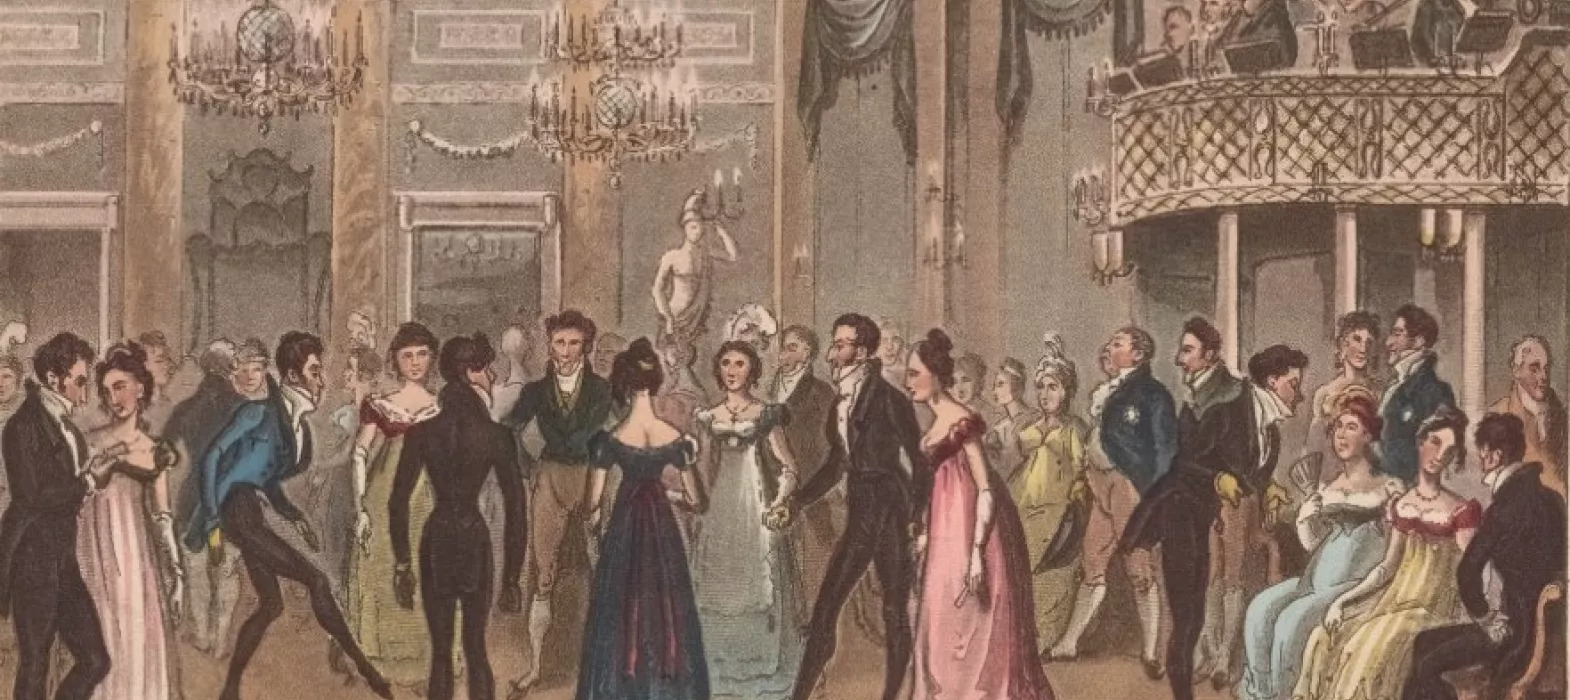 An illustration of an eighteenth century dance